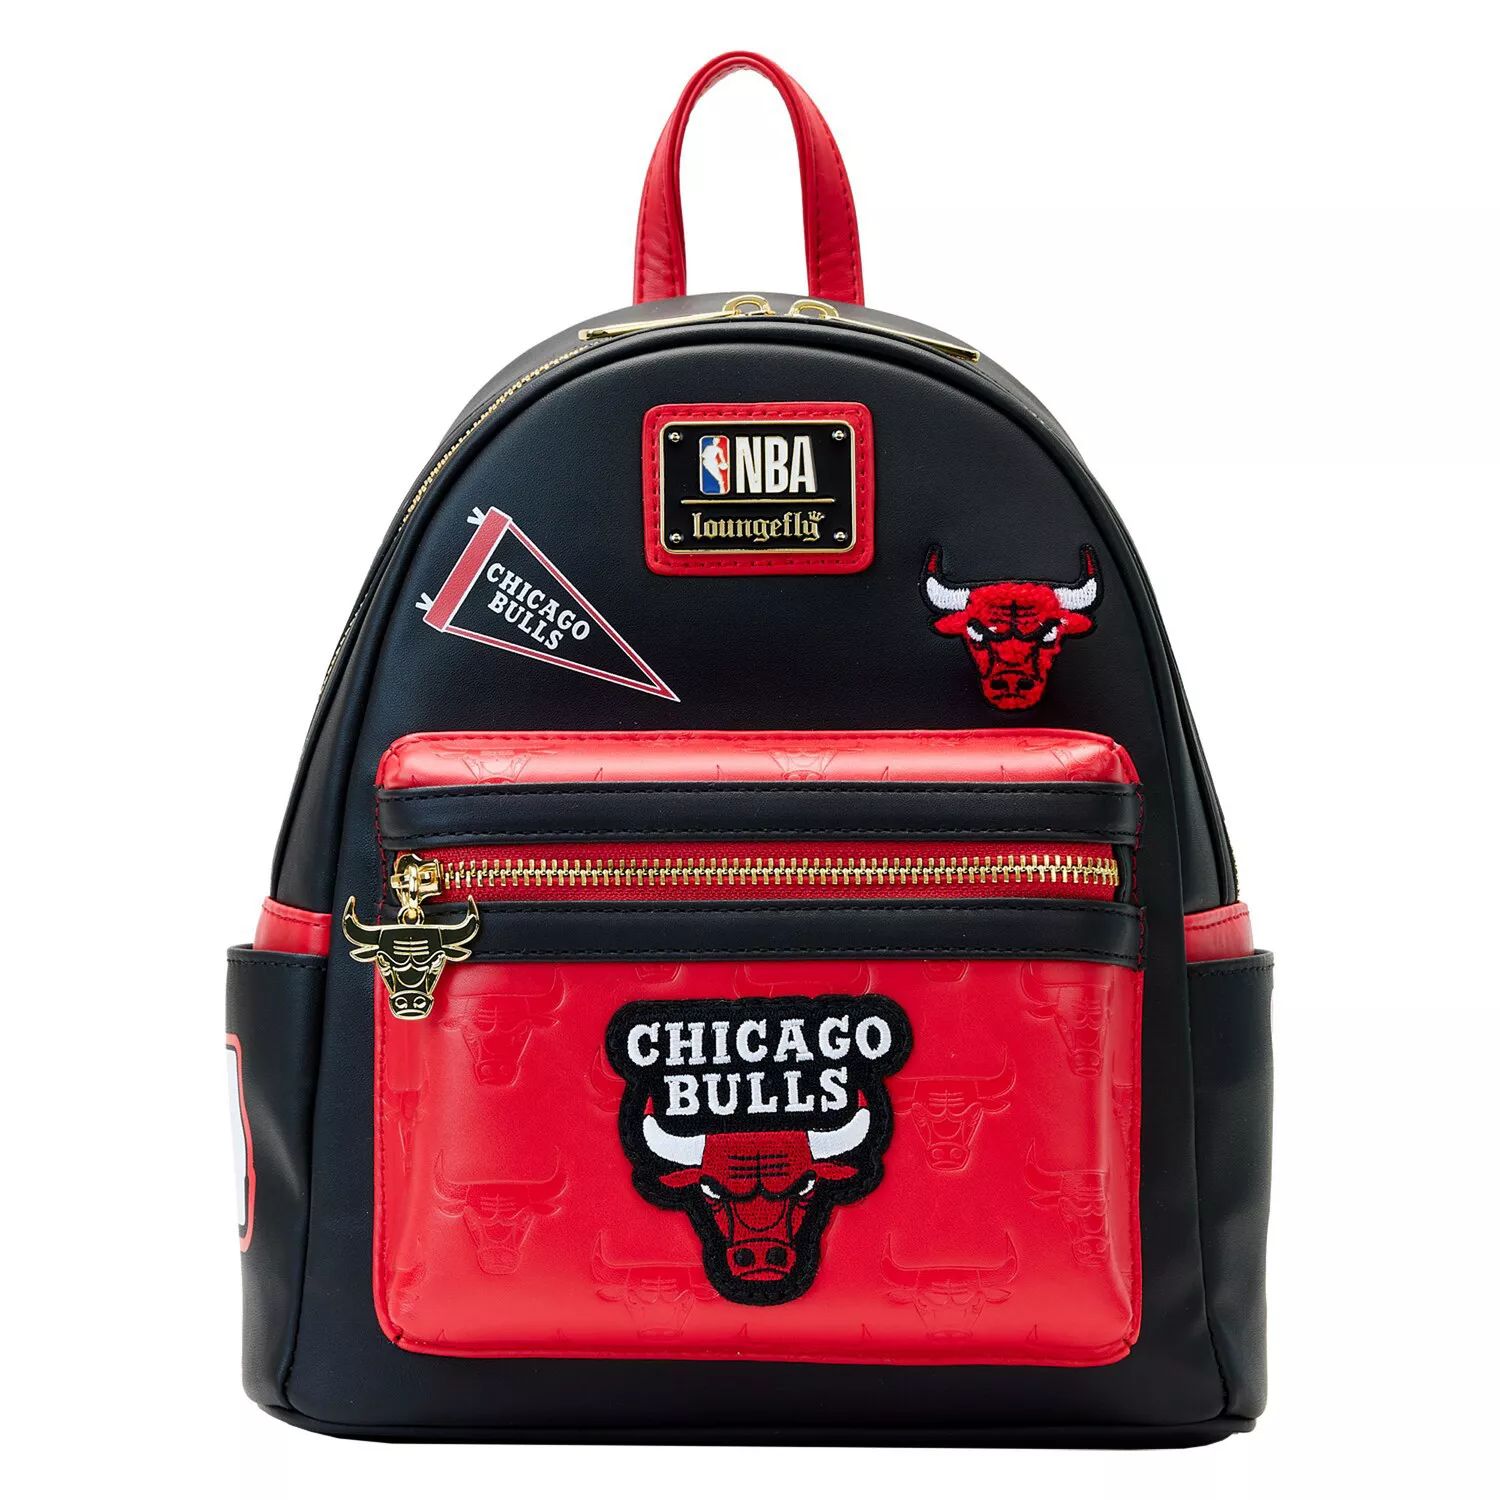 Мини-рюкзак Loungefly Chicago Bulls с нашивками